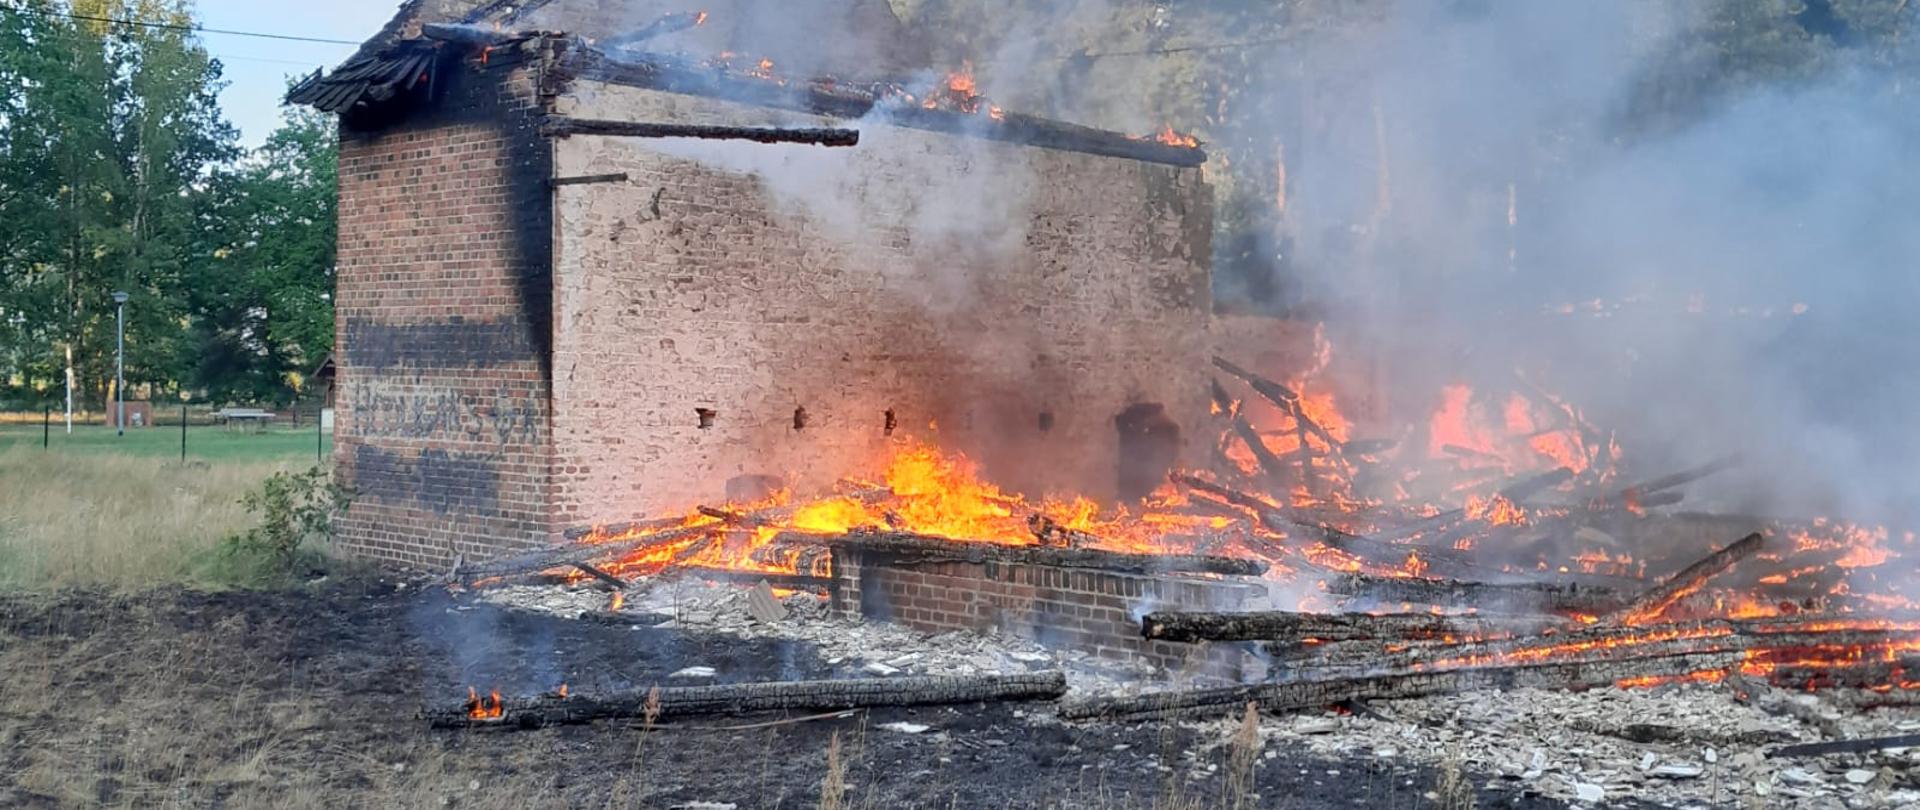 Zdjęcie przedstawia objęty pożarem budynek gospodarczy w całej objętości, który zawalił się jeszcze przed przybyciem jednostek ochrony przeciwpożarowej.